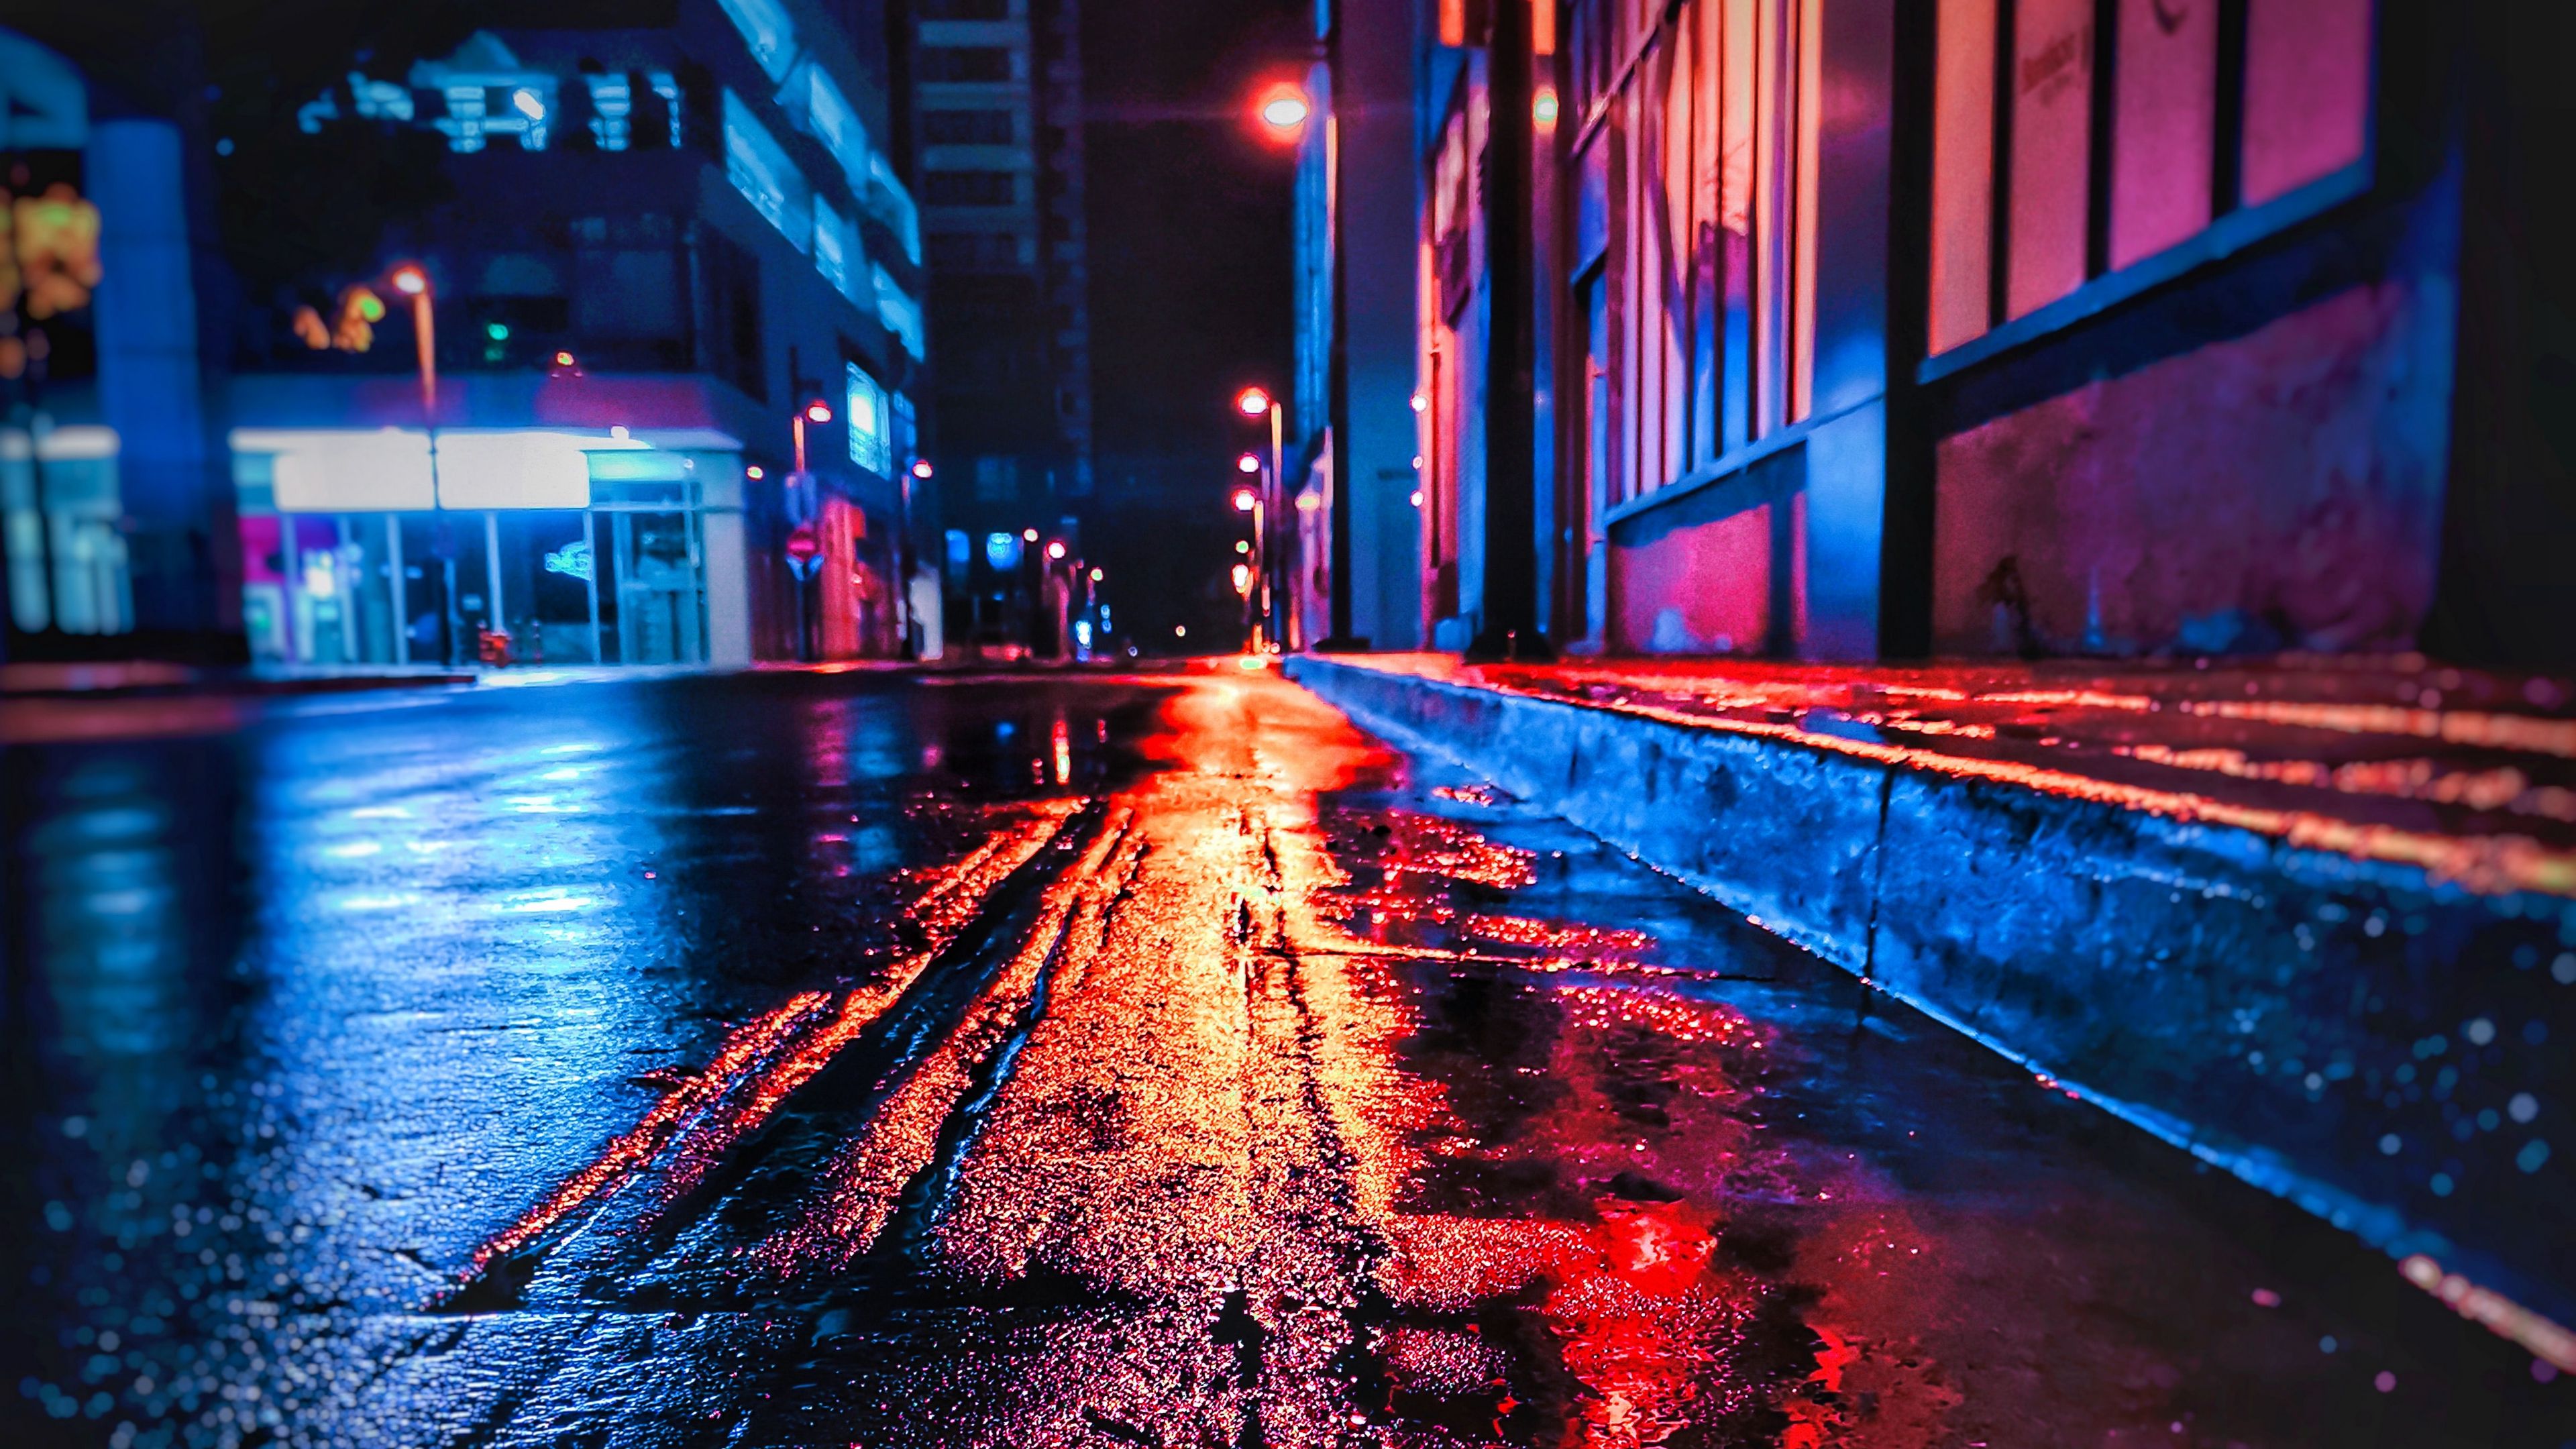 Hình nền 4K đêm thành phố neon sẽ khiến bạn say đắm trong ánh sáng tuyệt đẹp của đô thị về đêm. Đây là bức hình tuyệt vời để tăng cảm hứng cho công việc, hoặc để thư giãn sau một ngày dài mệt mỏi.